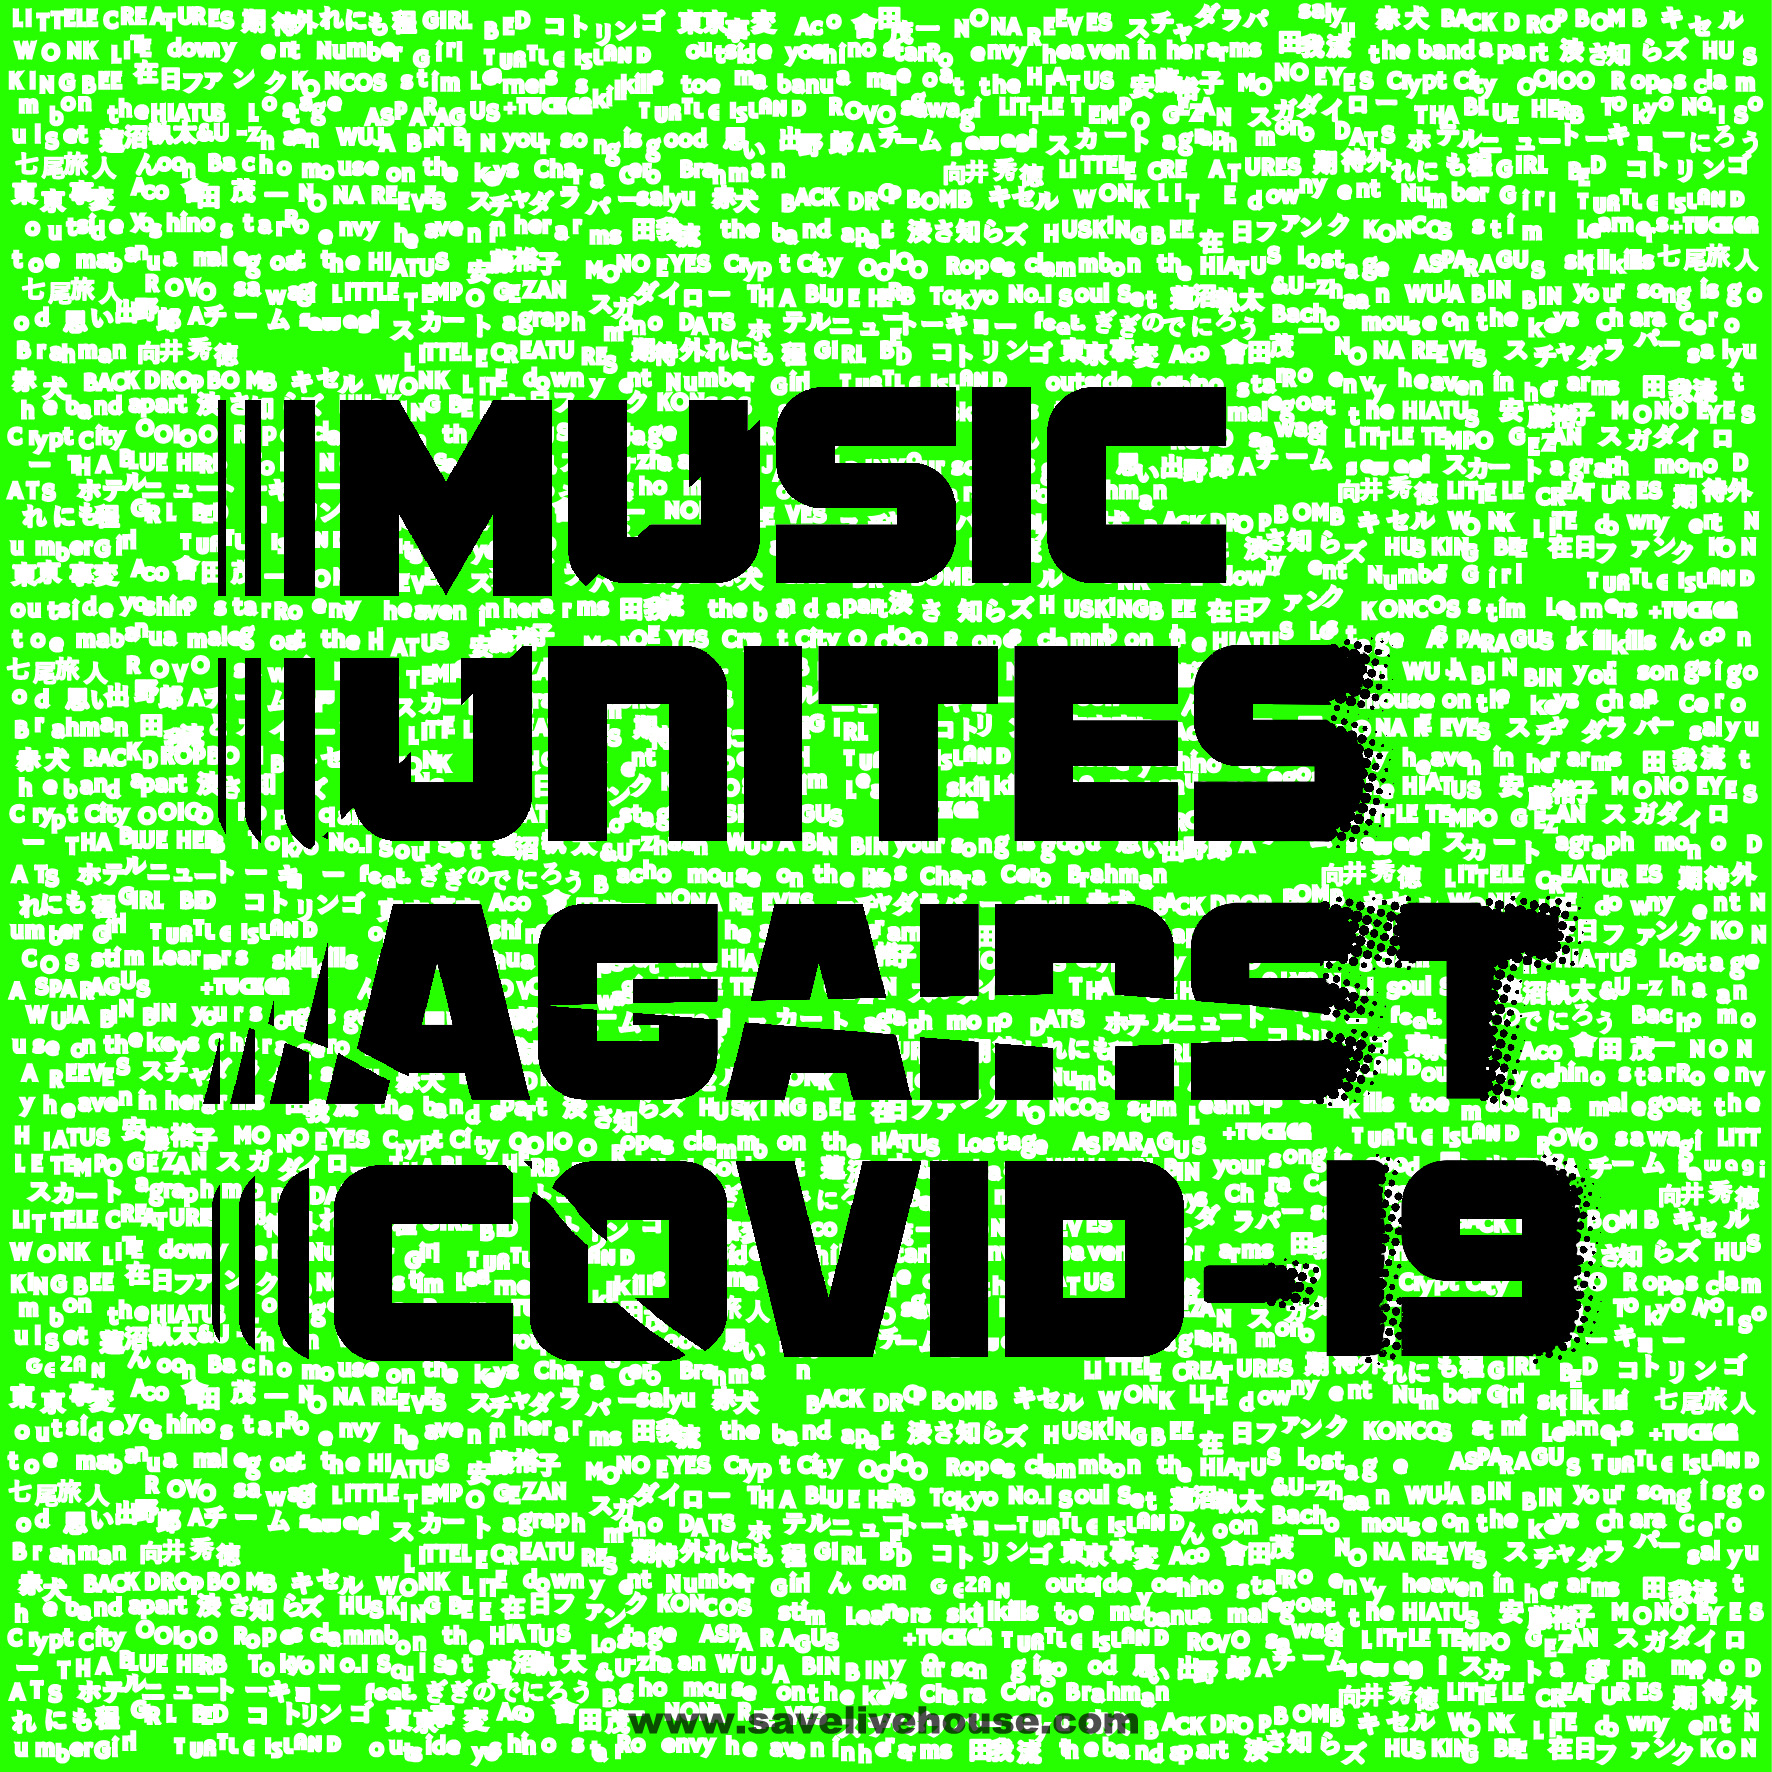 MUSIC UNITES AGAINST COVID-19